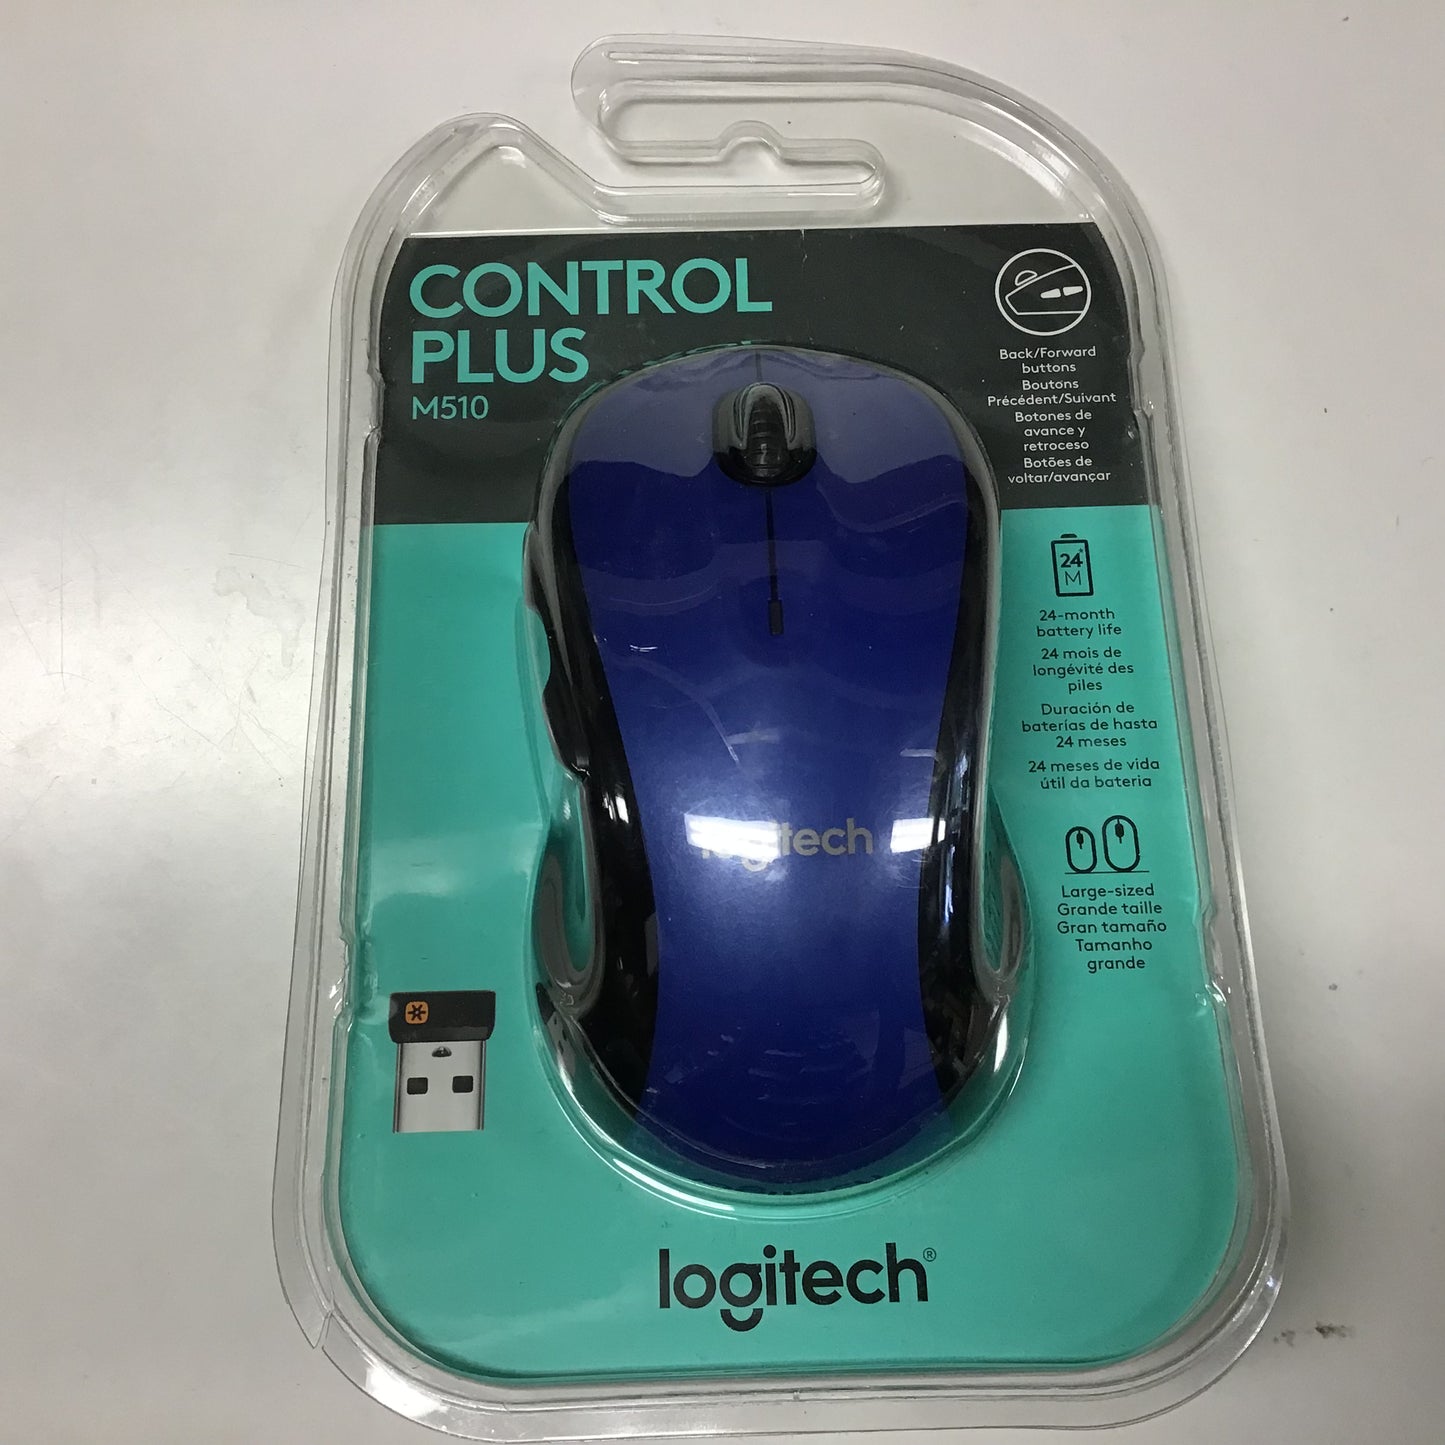 Logitech M510 Control Plus